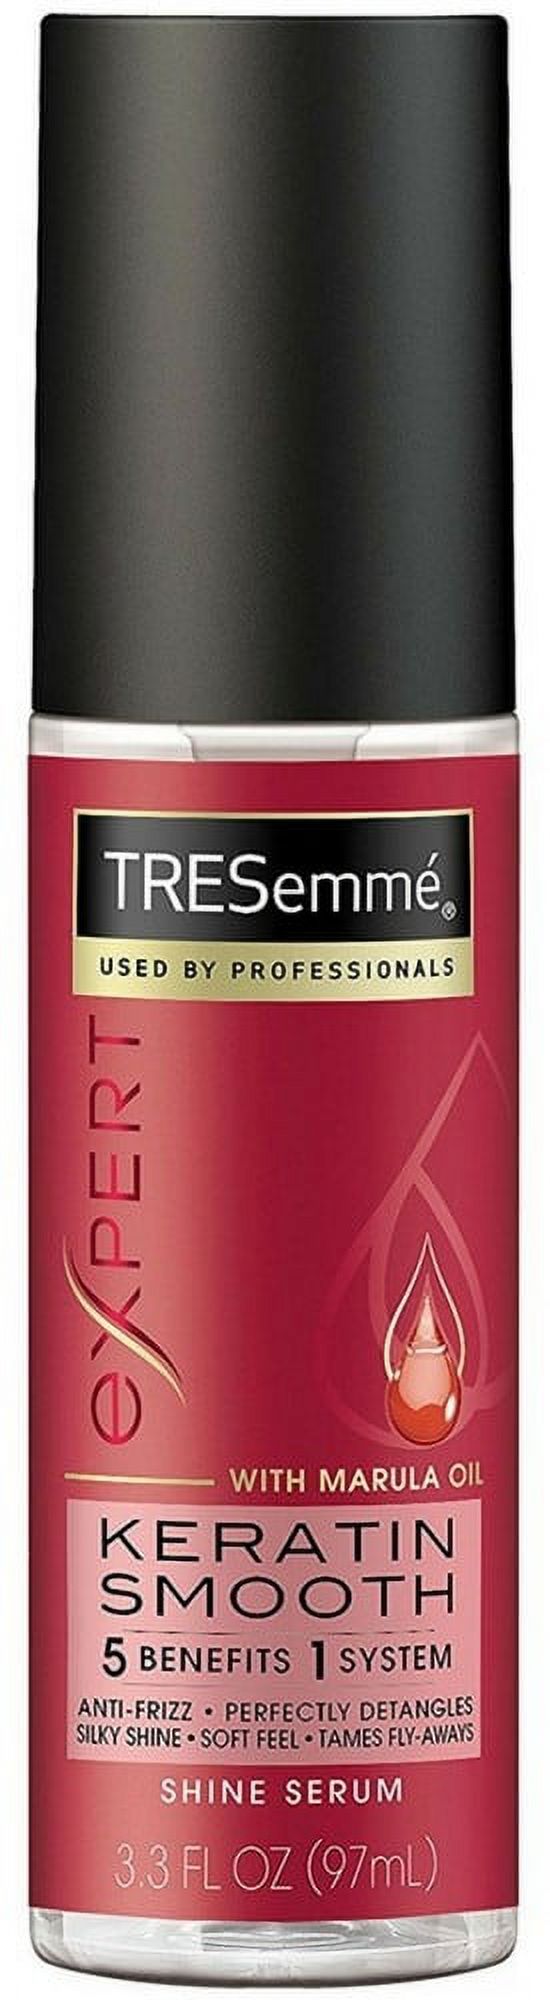 TRESemme Keratin Smooth Shine Serum, 3.3 oz - image 1 of 3